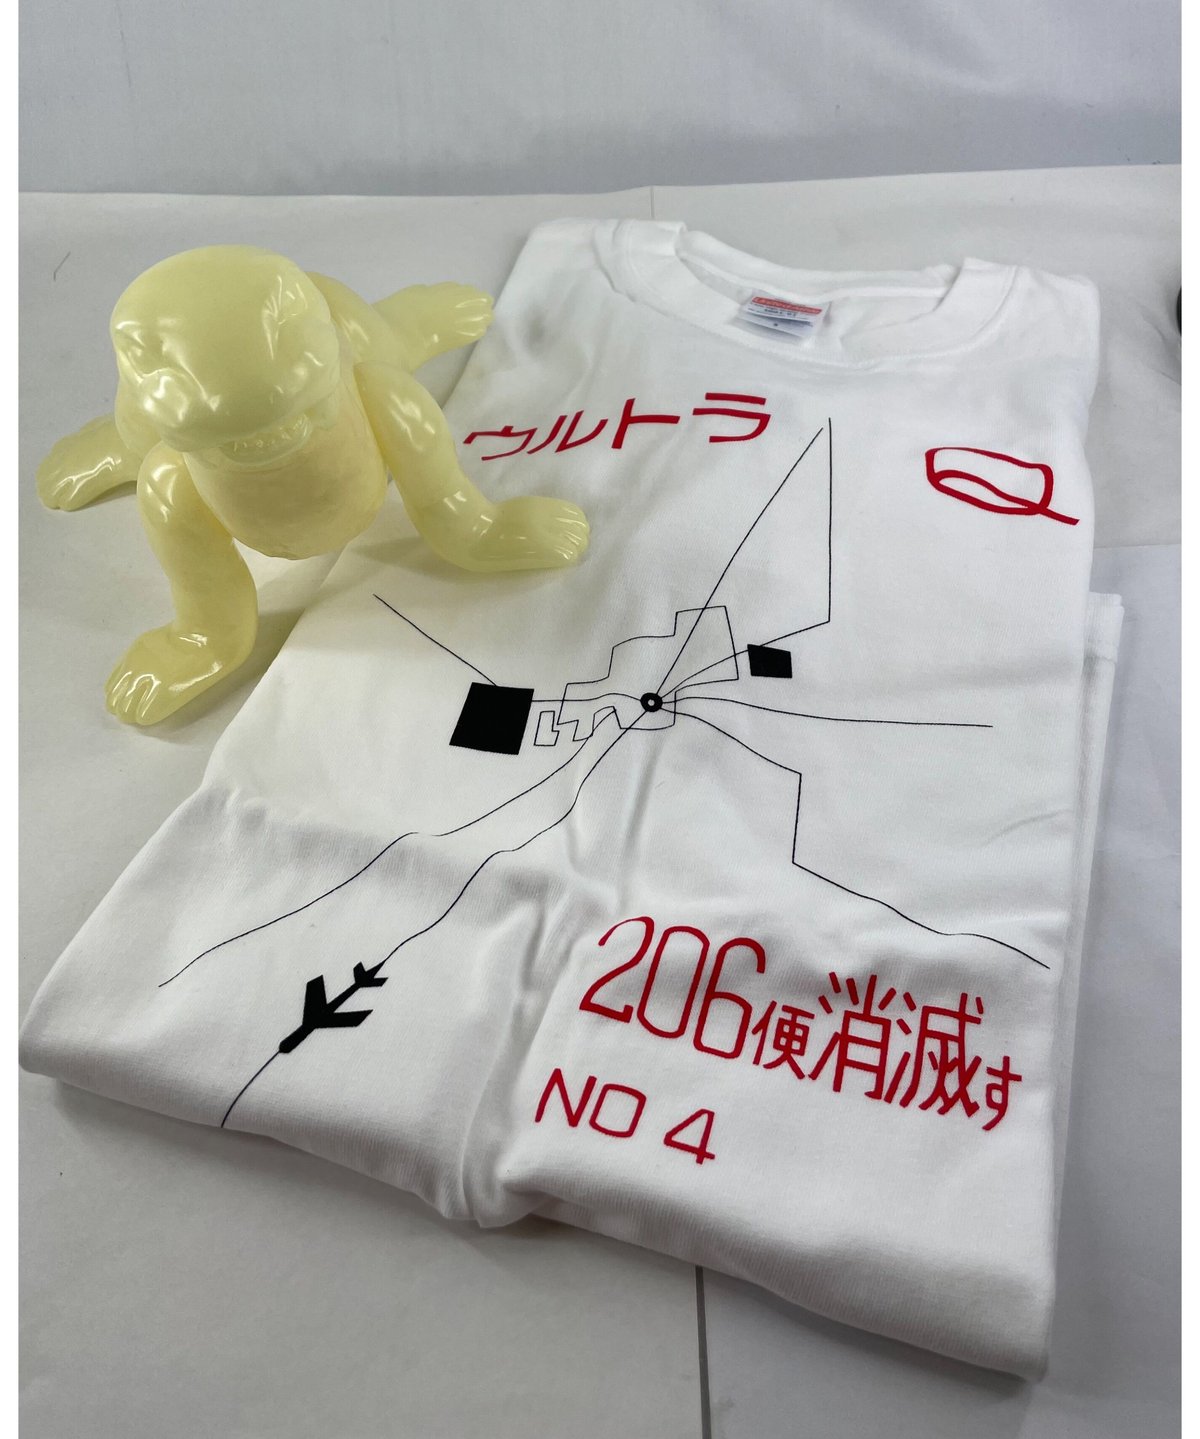 ウルトラQ『206便消滅す』Tシャツと蓄光版トドラ未塗装